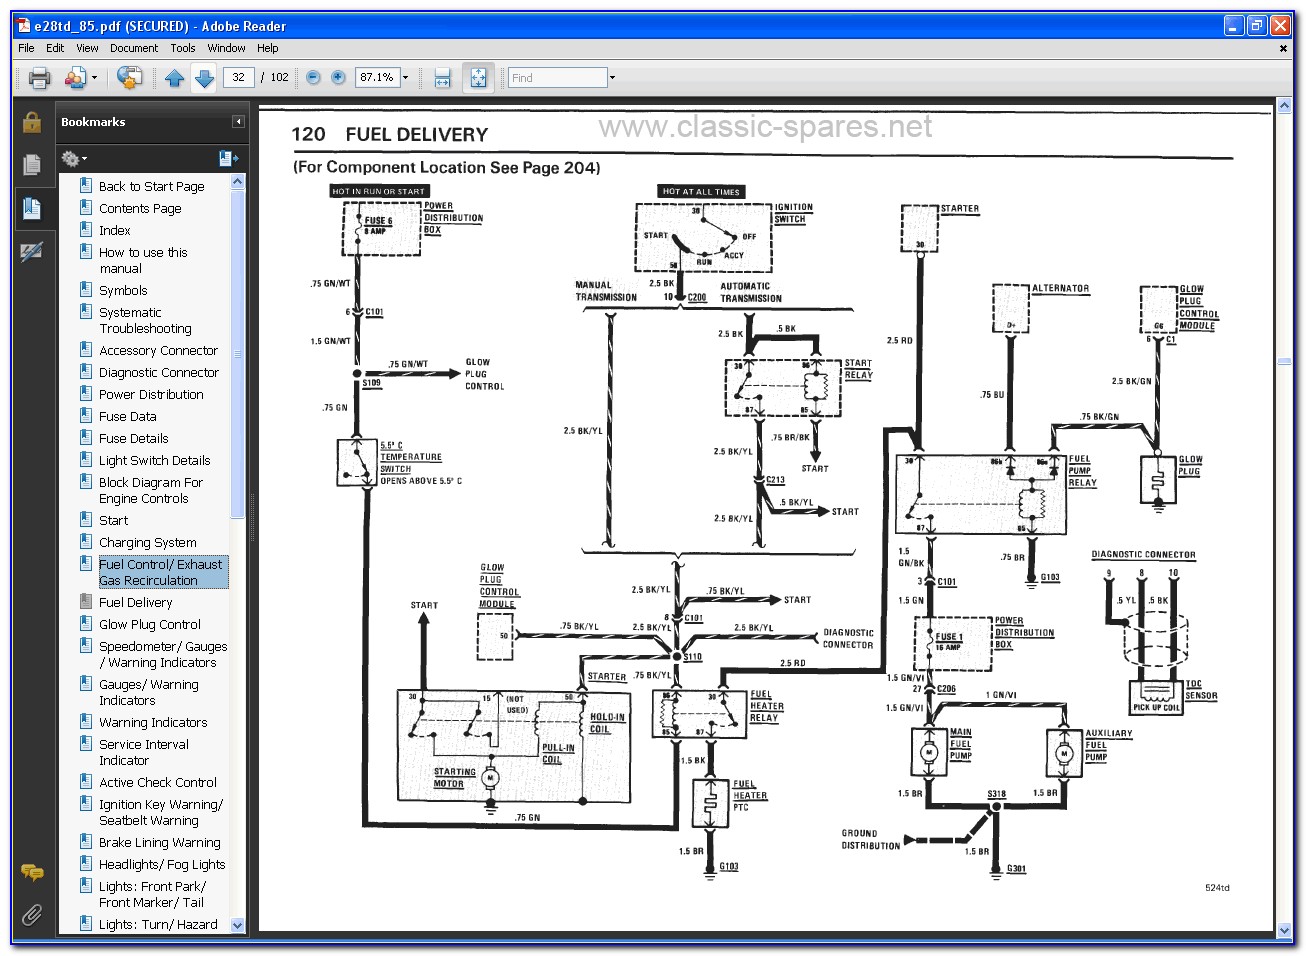 Bmw Wiring Diagram System Online